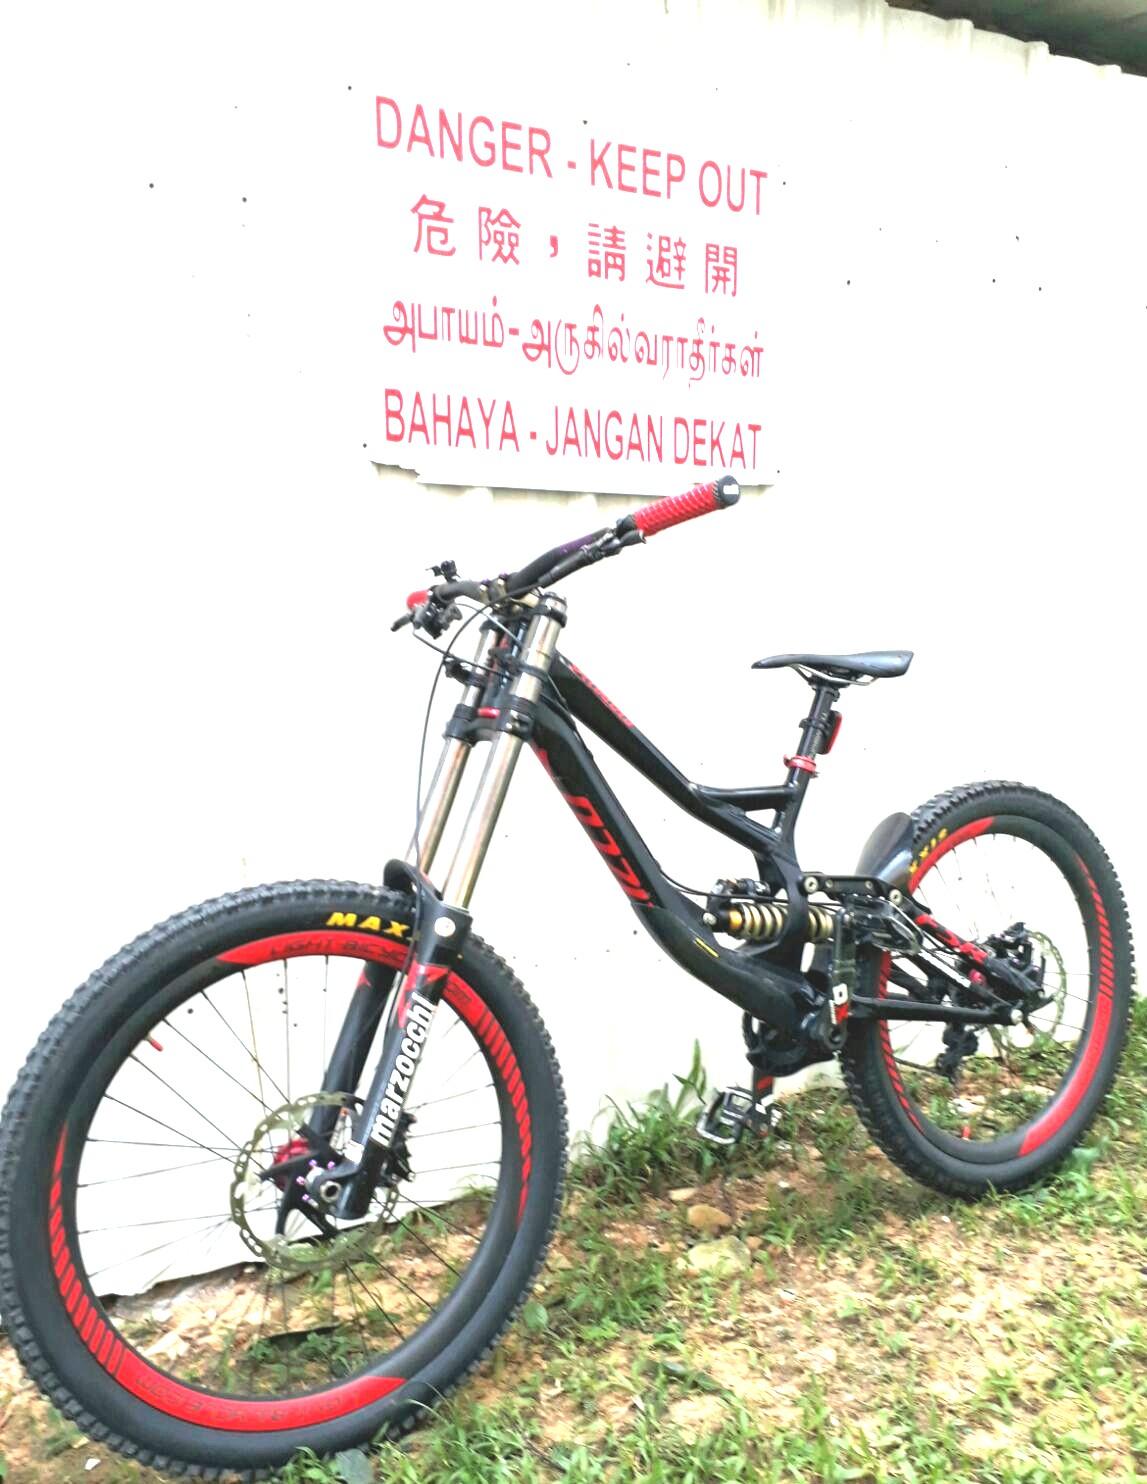 specialized titanium bike